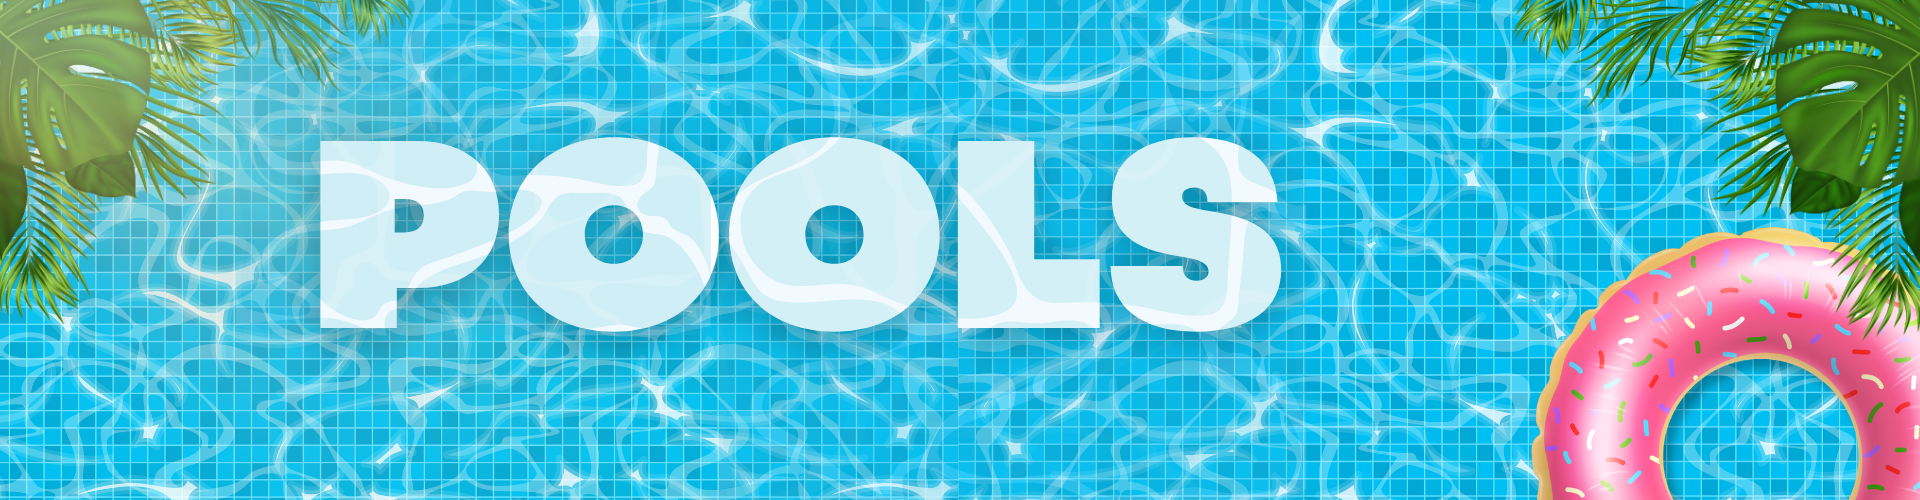 Pool sale